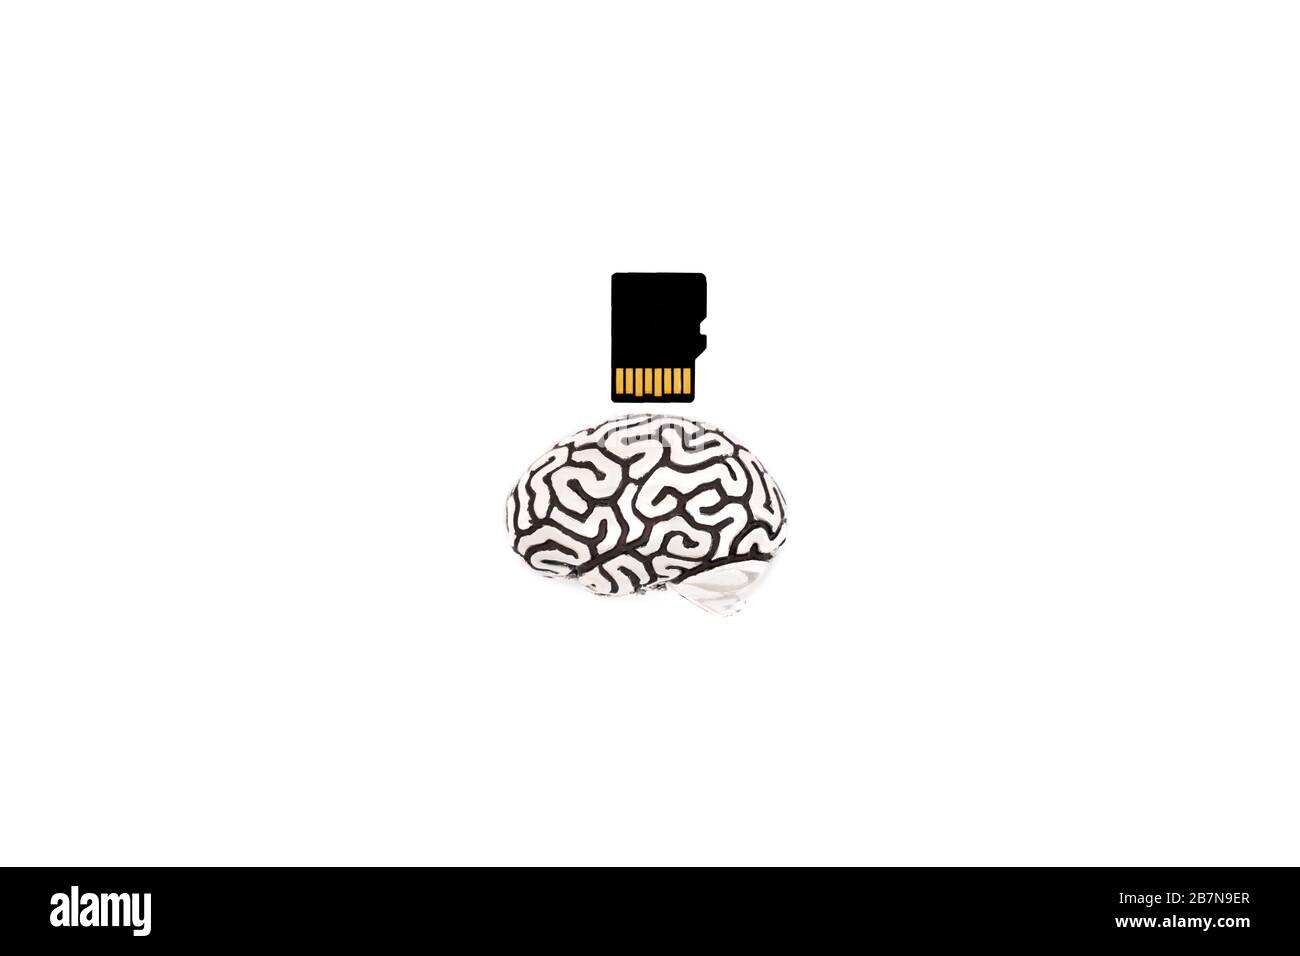 Piccolo modello metallico di cervello umano vicino a una scheda micro SD isolata su bianco. Scatto del profilo. La capacità della memoria del cervello umano aumenta il concetto. Foto Stock